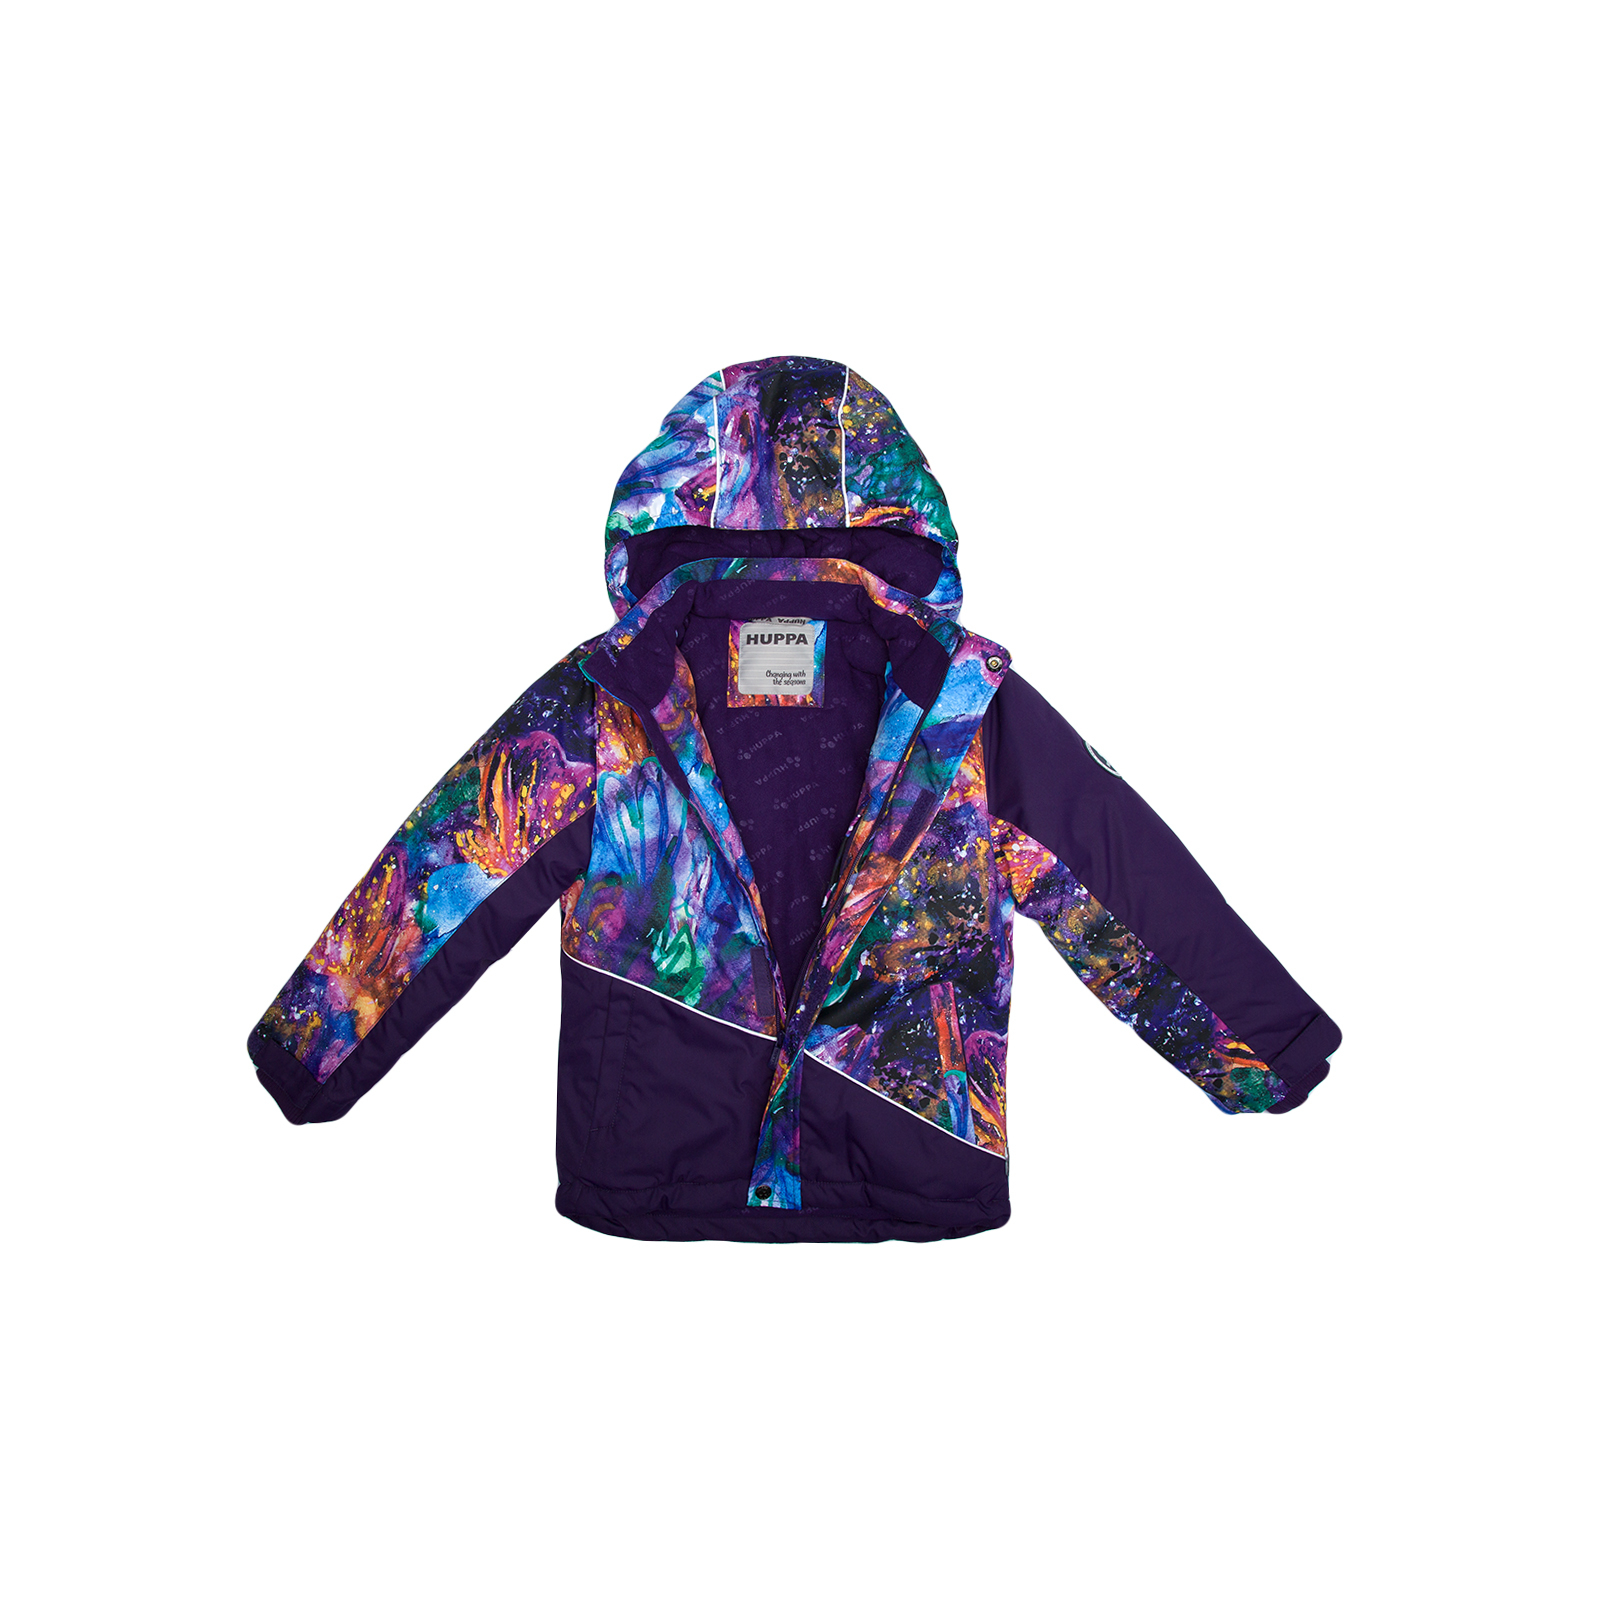 Куртка Huppa ALEX 1 17800130 пурпур с принтом/тёмно-лилoвый 122 (4741468986975) изображение 3